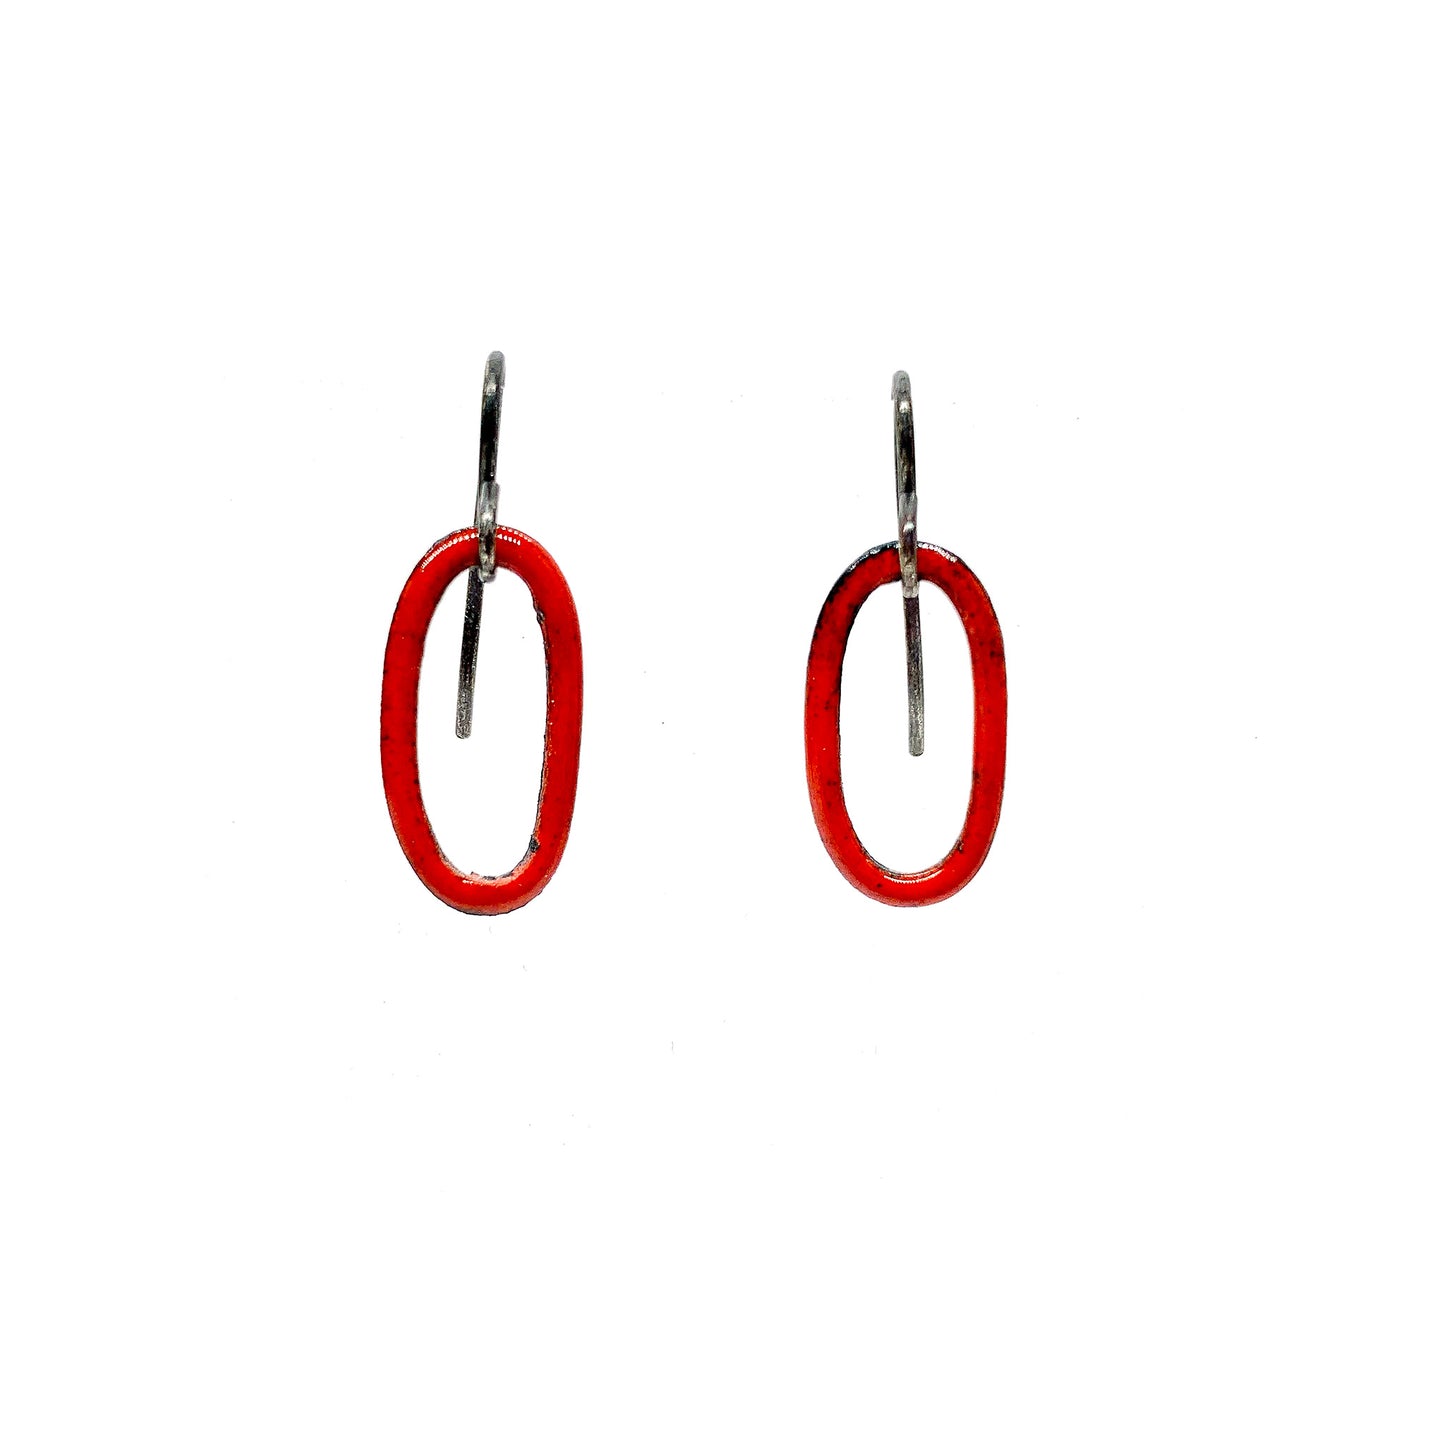 Enamel Red Oval Ring Earrings